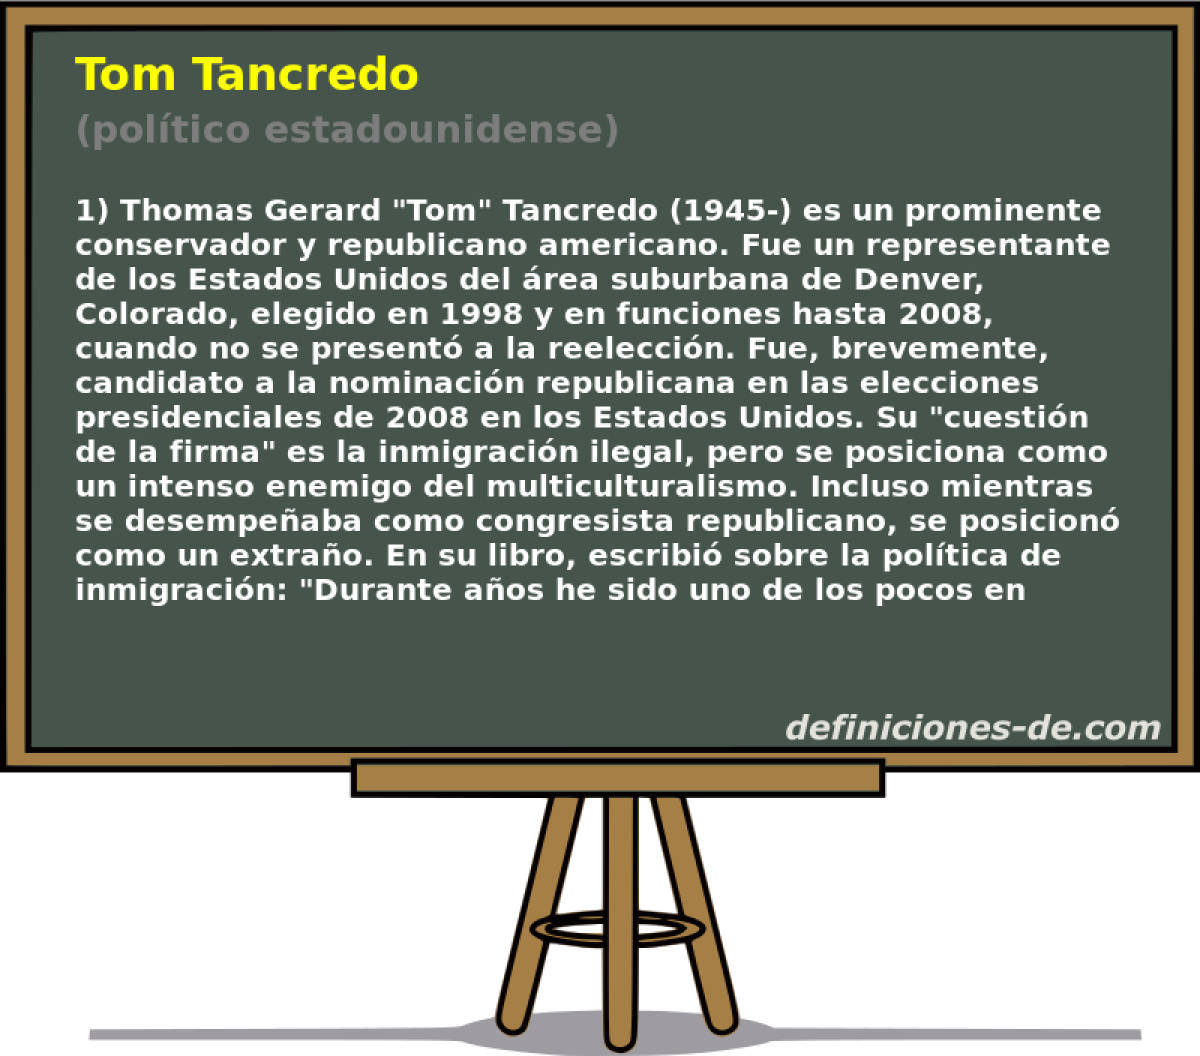 Tom Tancredo (poltico estadounidense)